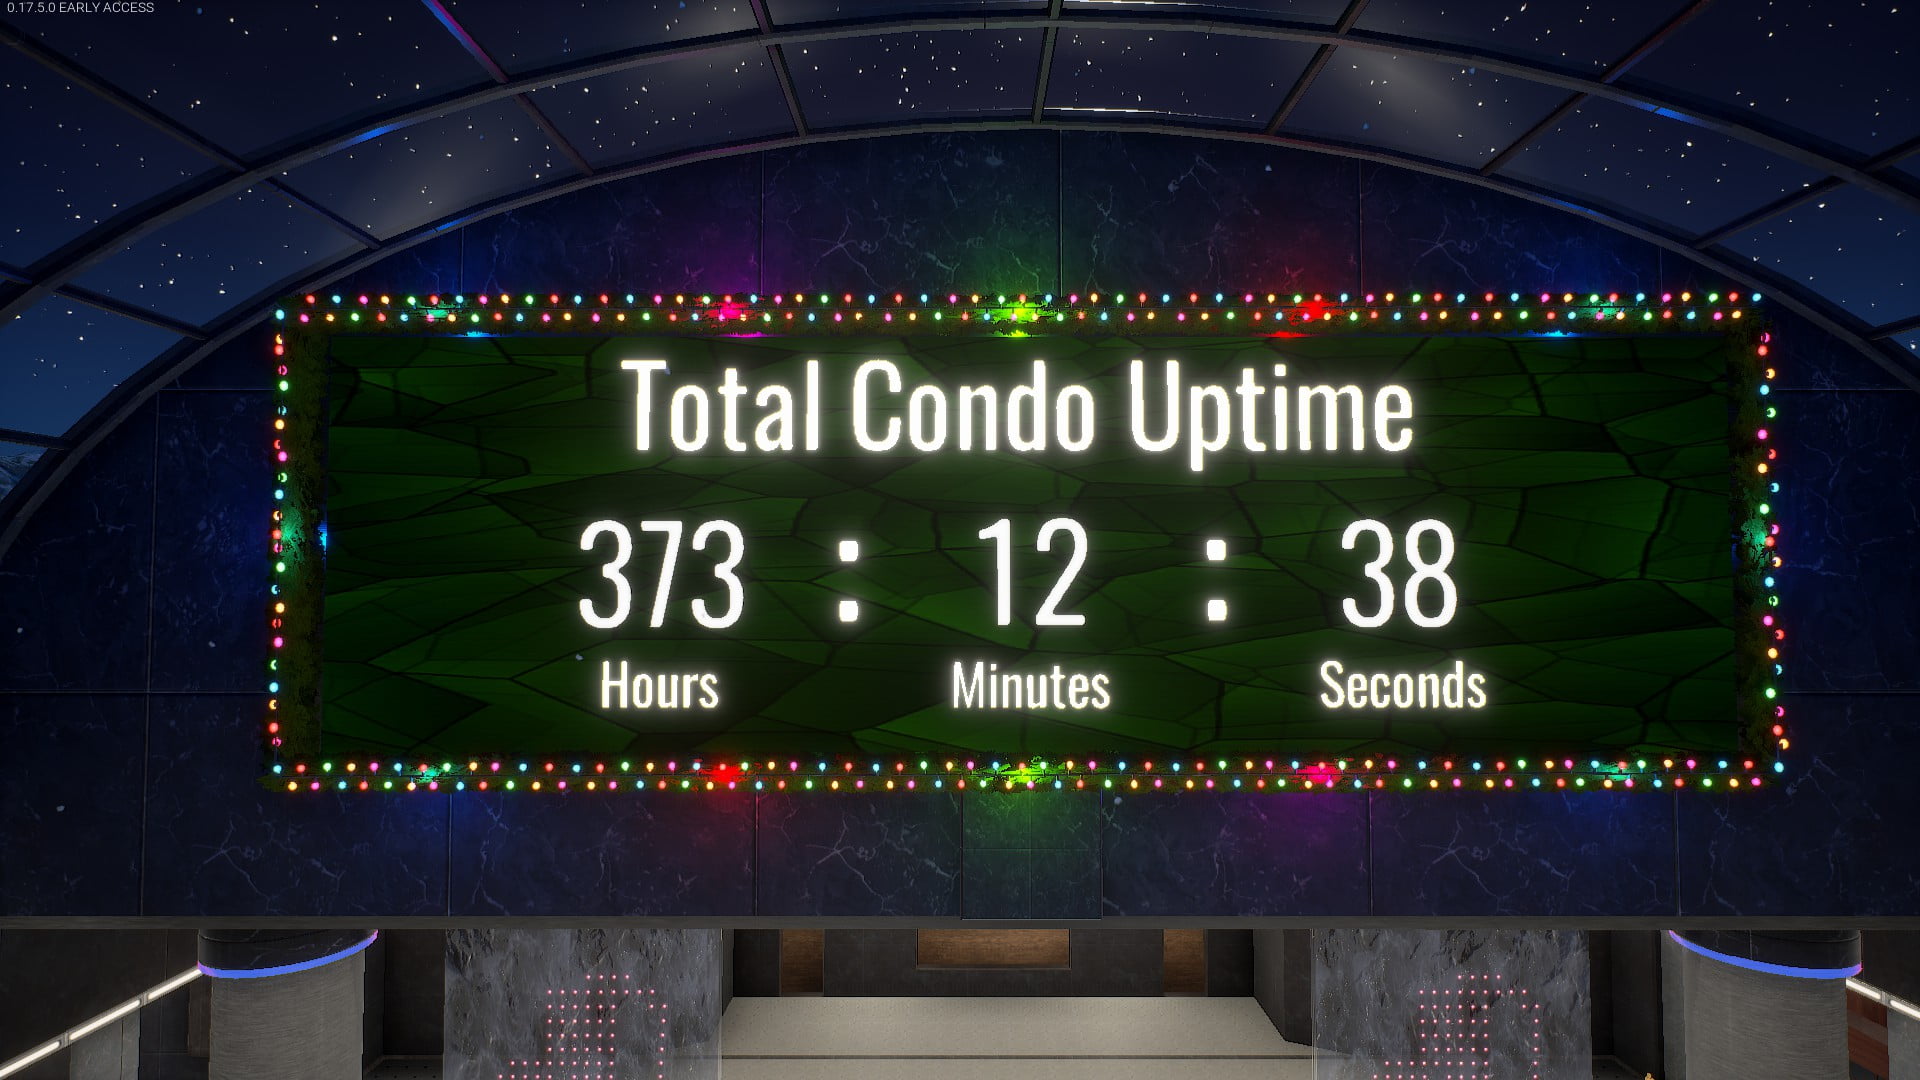 Condo I/O: Condo Up-time Counter